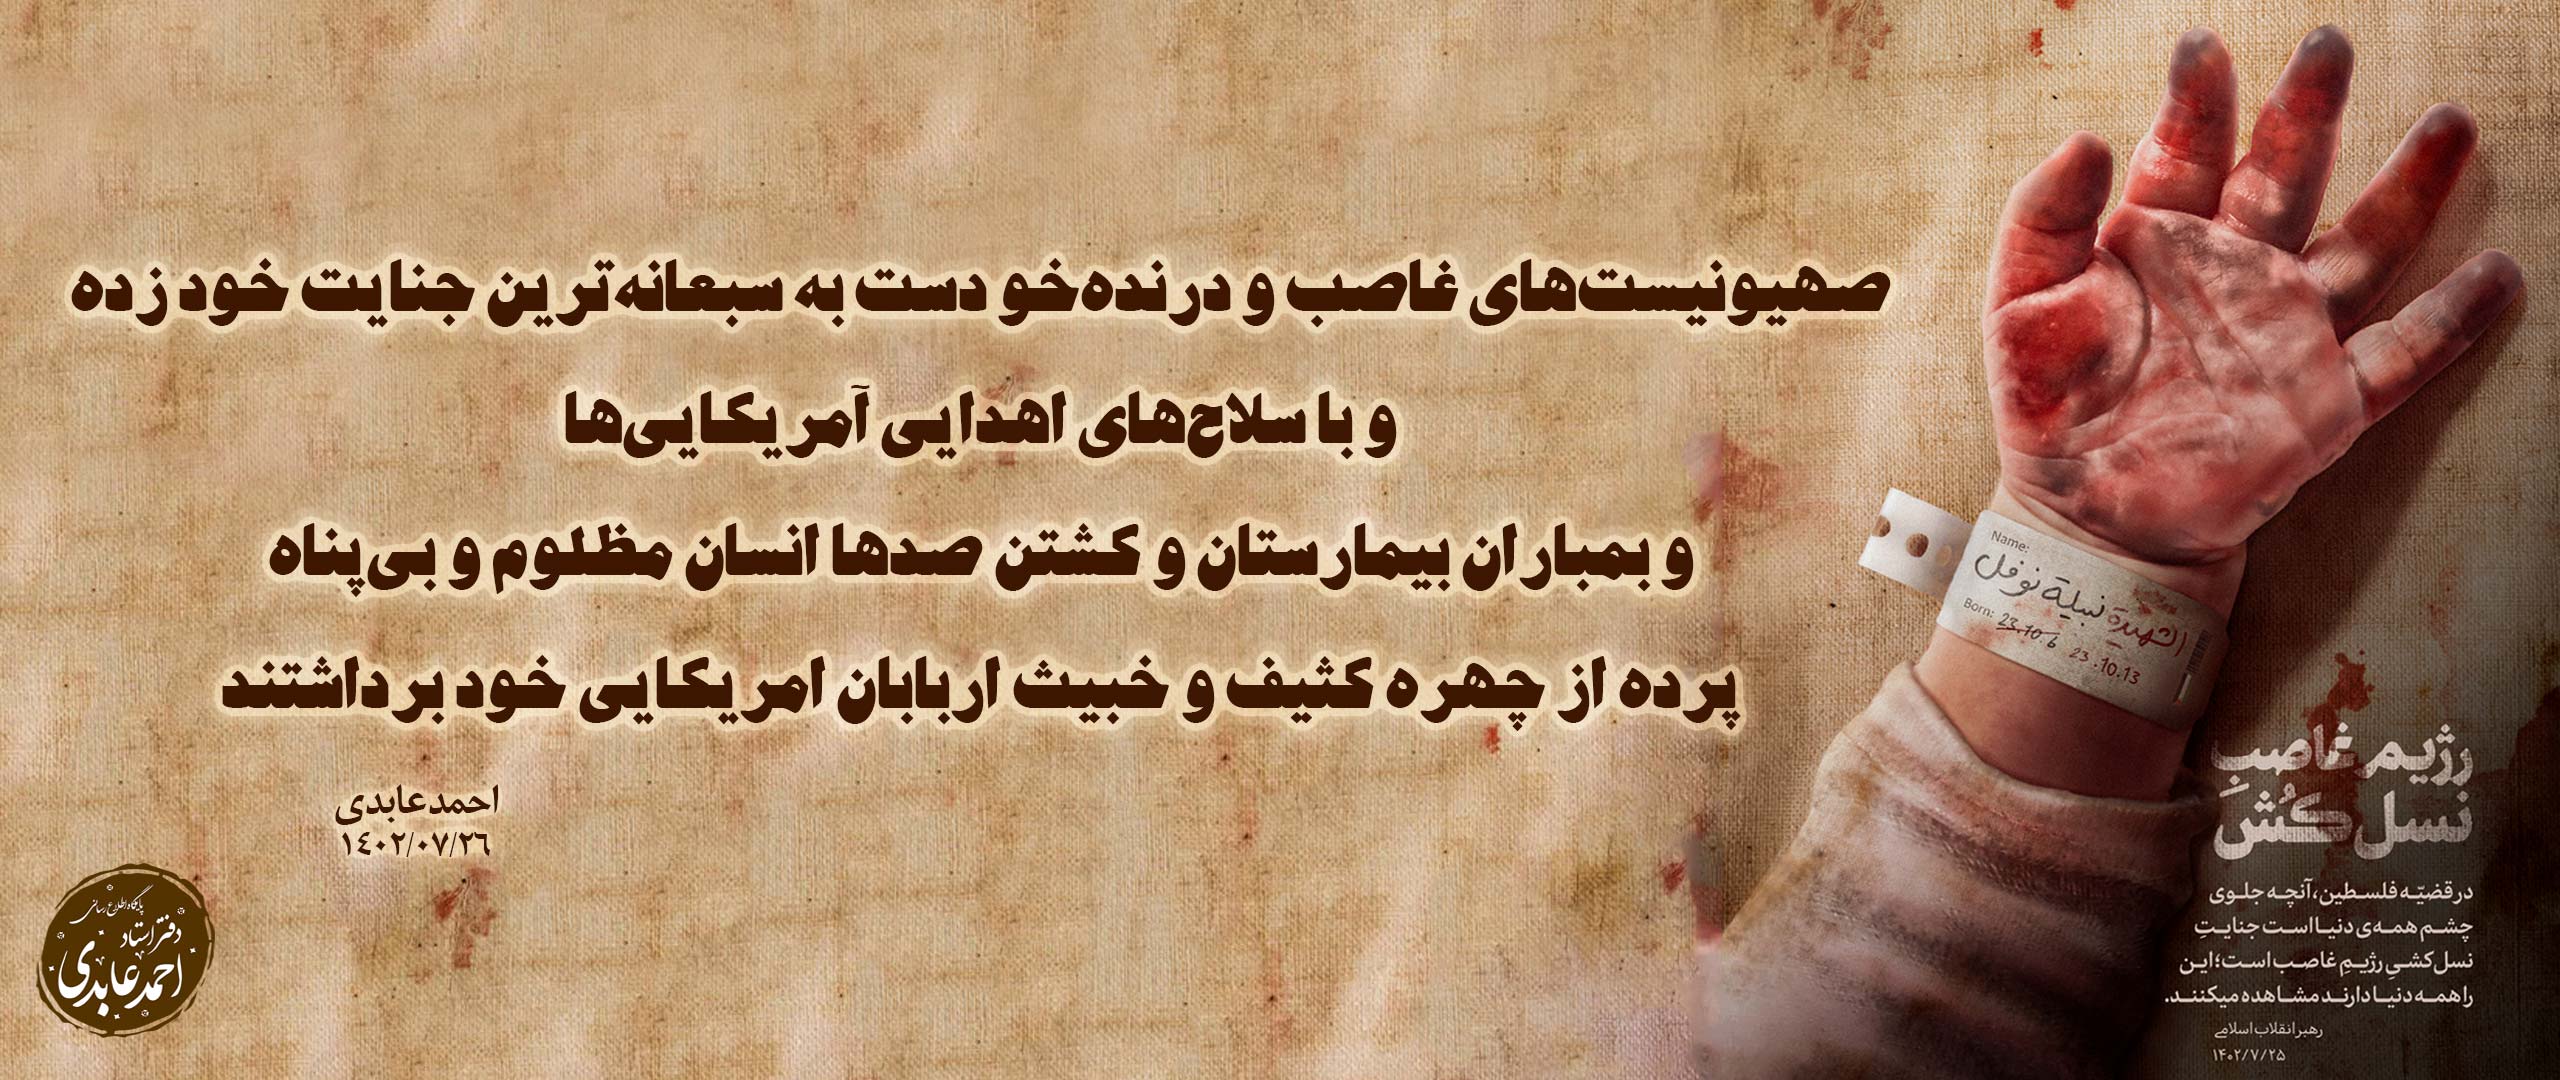 پیام استاد احمد عابدی در پی جنایت رژیم صهیونیستی